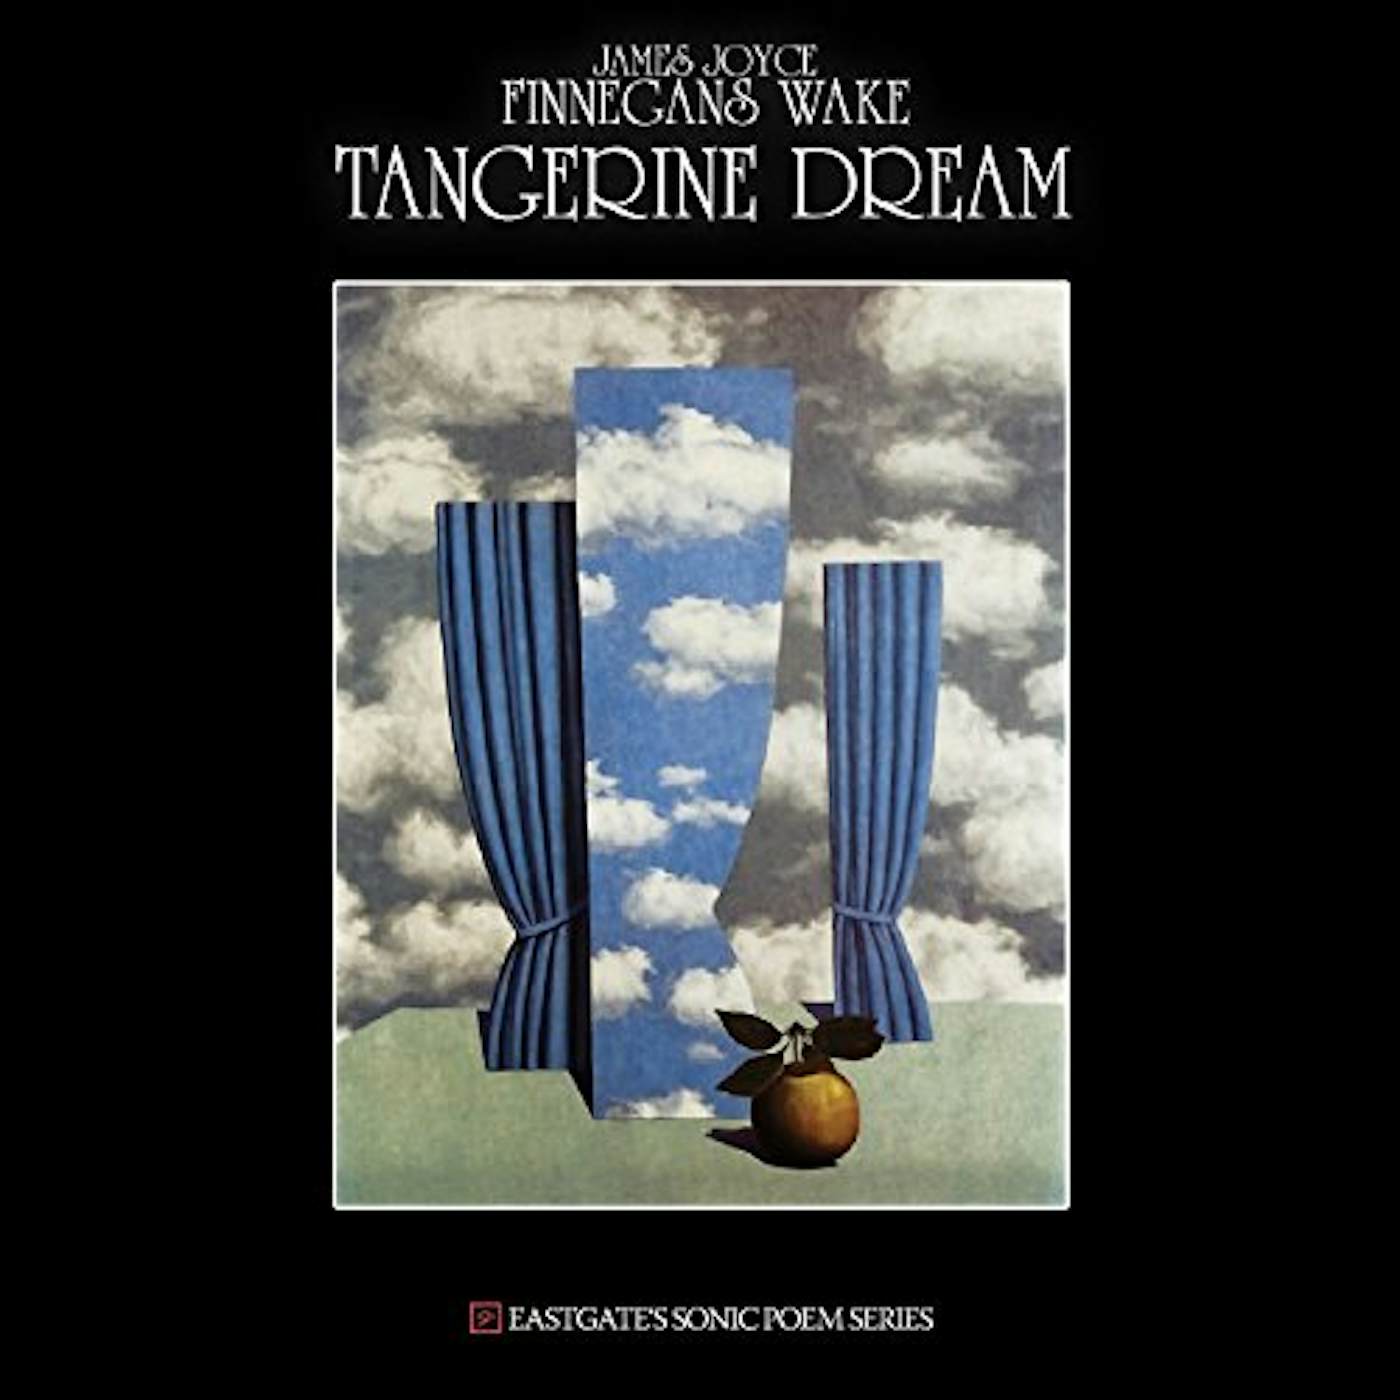 Tangerine Dream JAMES JOYCE - FINNEGANS WAKE CD